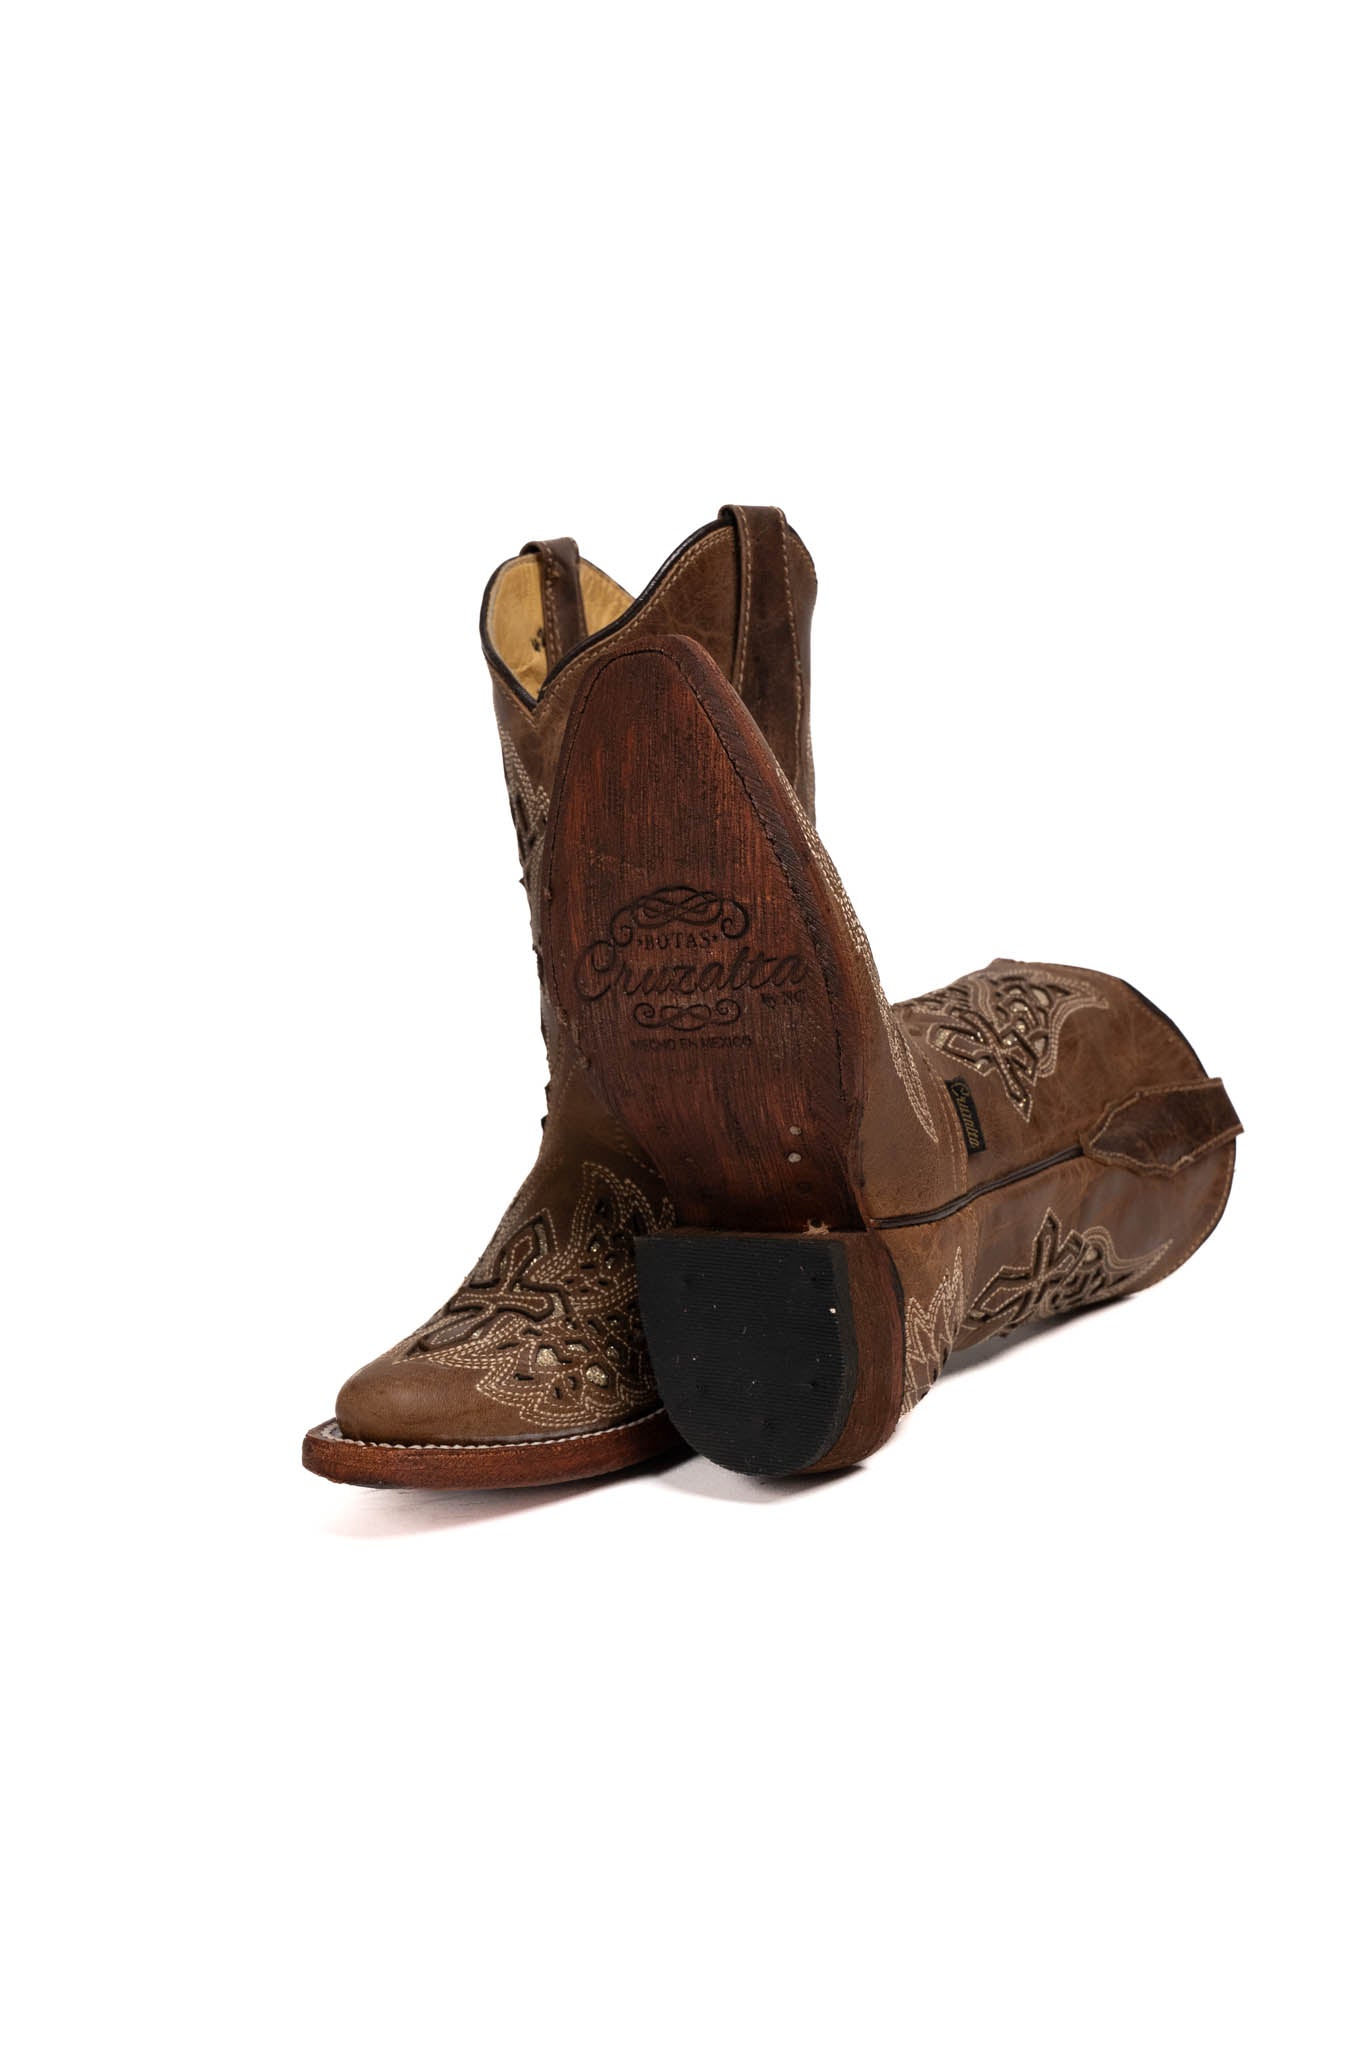 Little Cruz Piedra Retro Cowgirl Boot